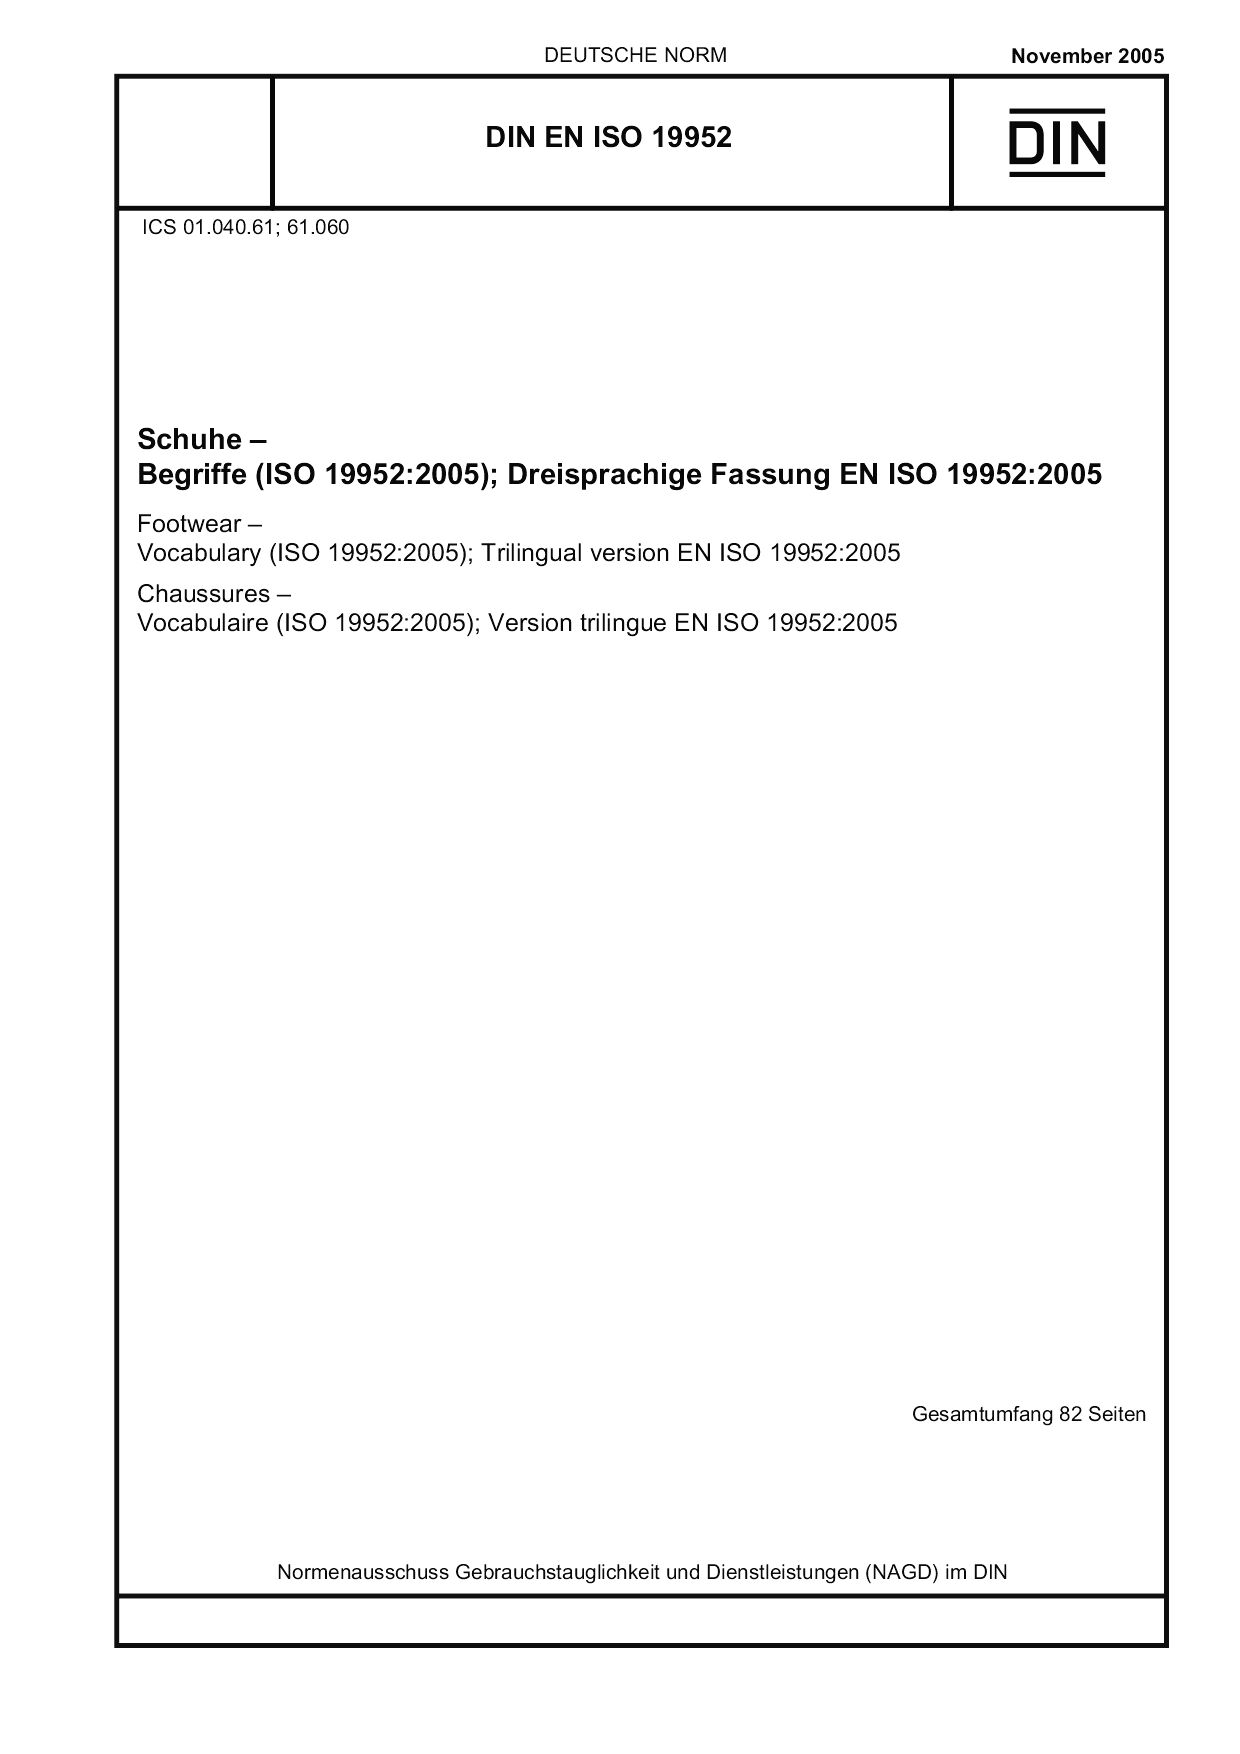 DIN EN ISO 19952:2005